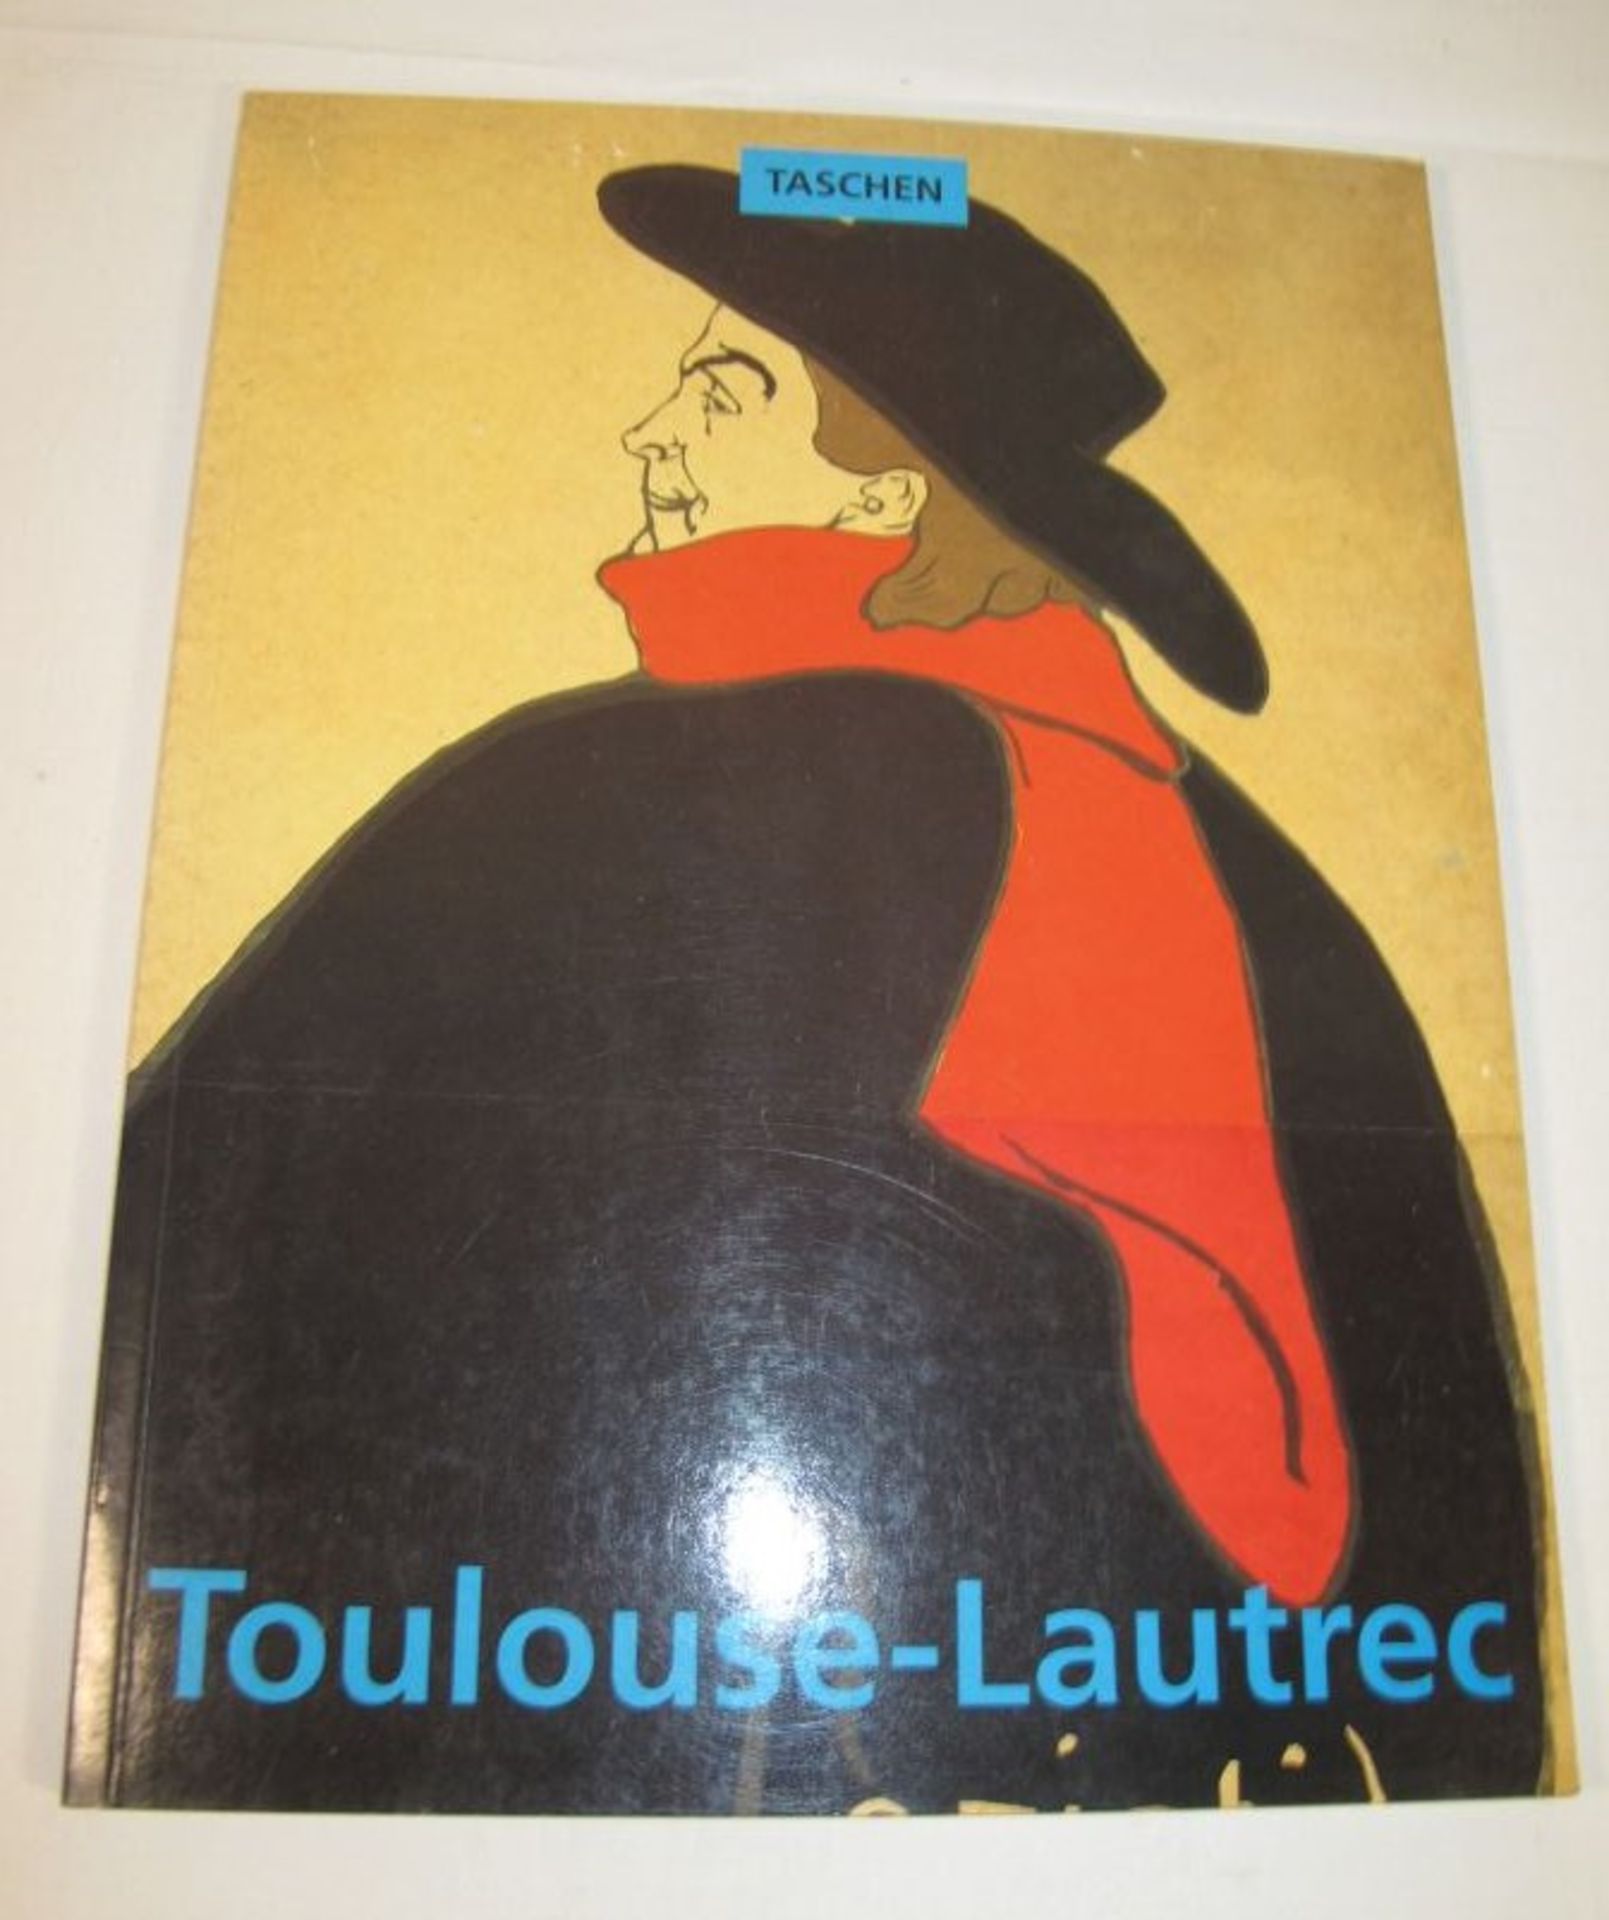 Toulouse.Lautrec 1864-1901, Taschen, Paperback